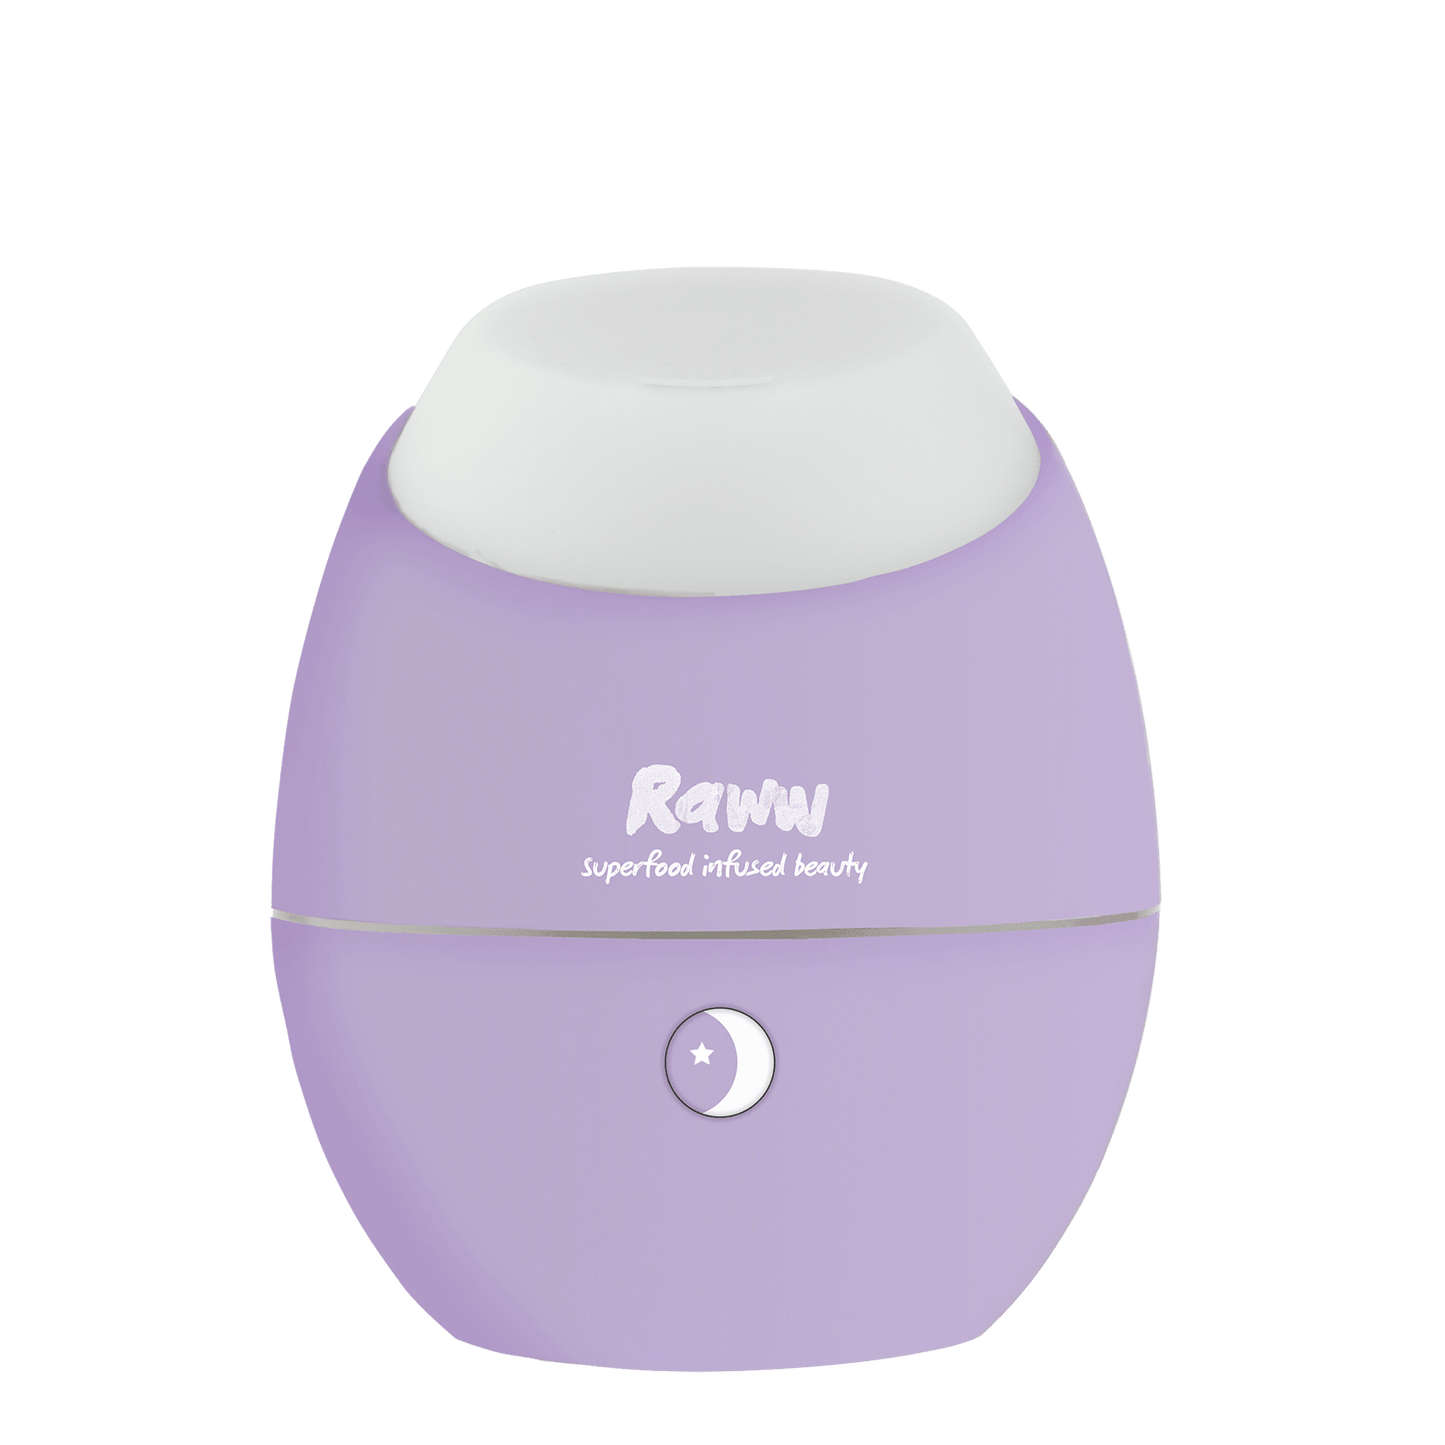 Sleeping Beauty Aromatherapy Kit | RAWW Cosmetics | 03